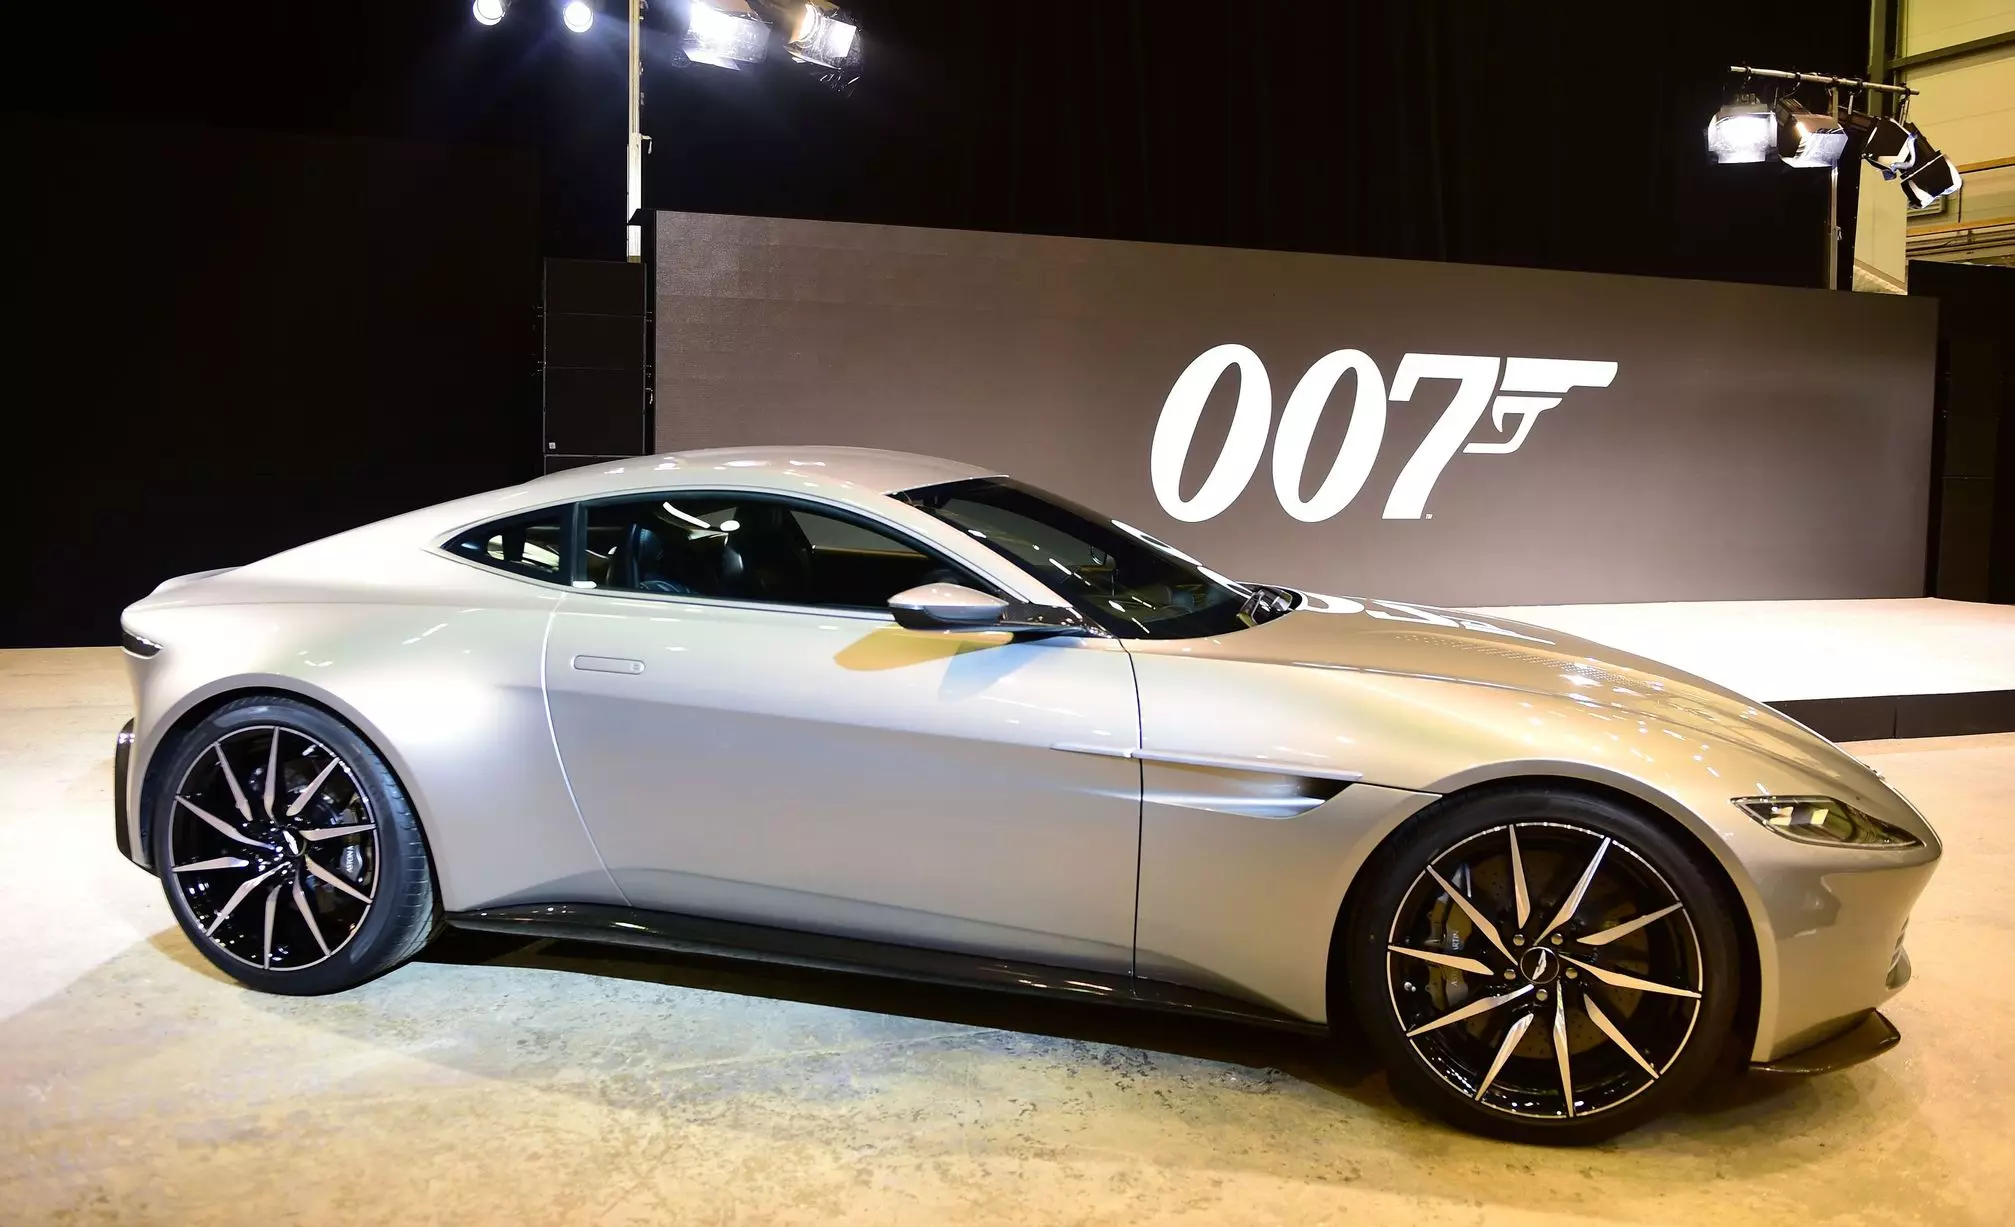 Najnoviji film o Jamesu Bondu uništio je oko 32 milijuna eura u automobilima